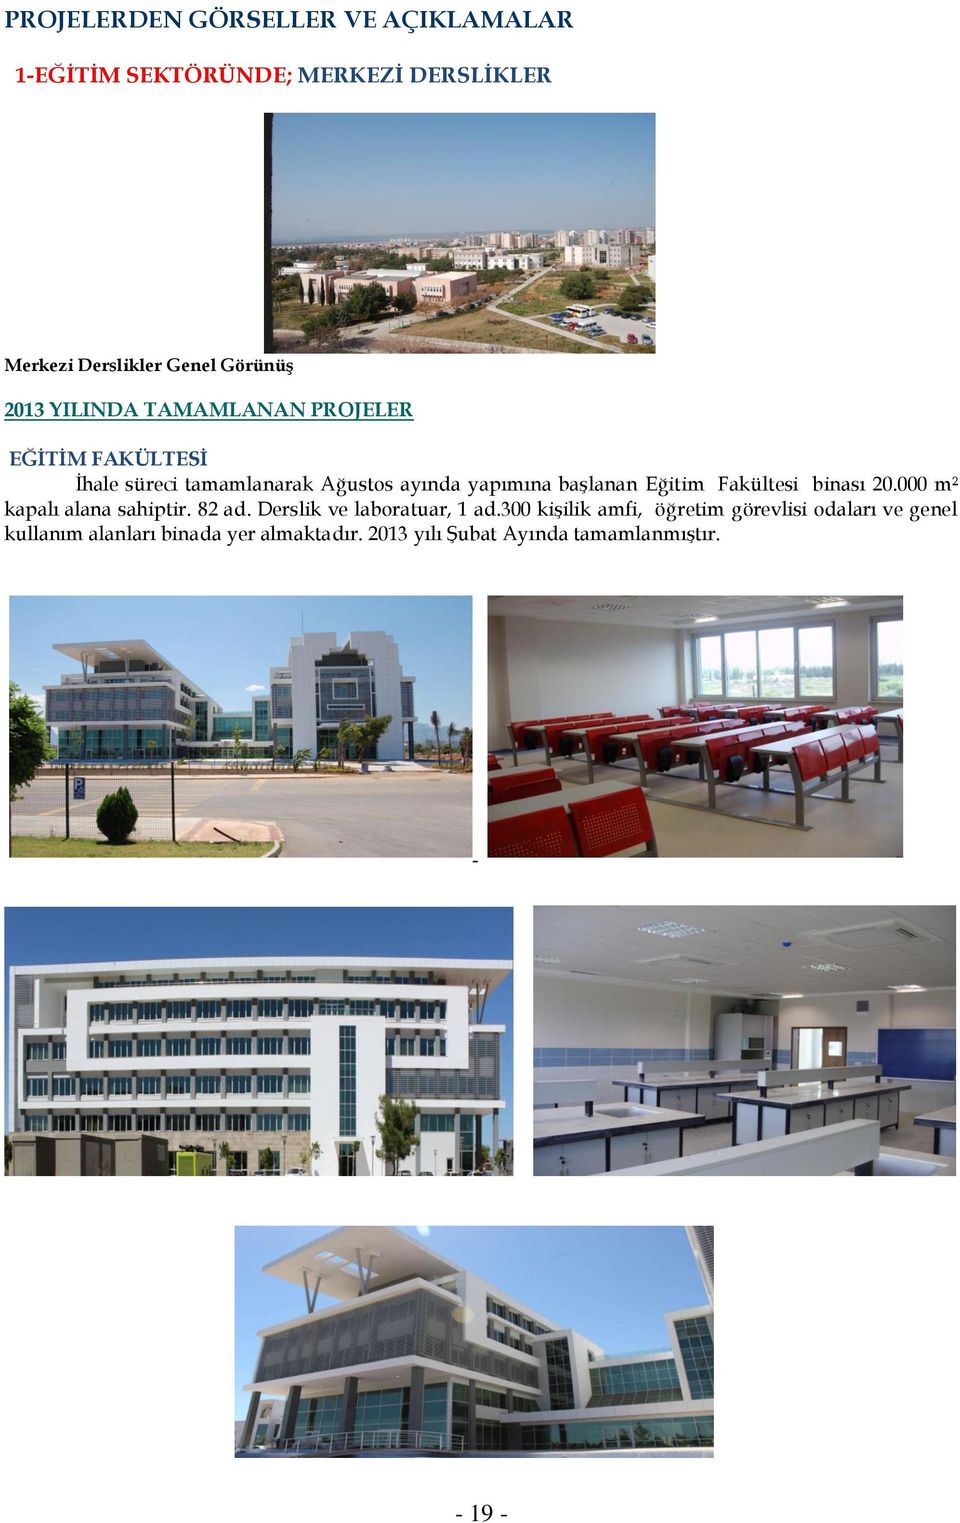 Eğitim Fakültesi binası 20.000 m² kapalı alana sahiptir. 82 ad. Derslik ve laboratuar, 1 ad.